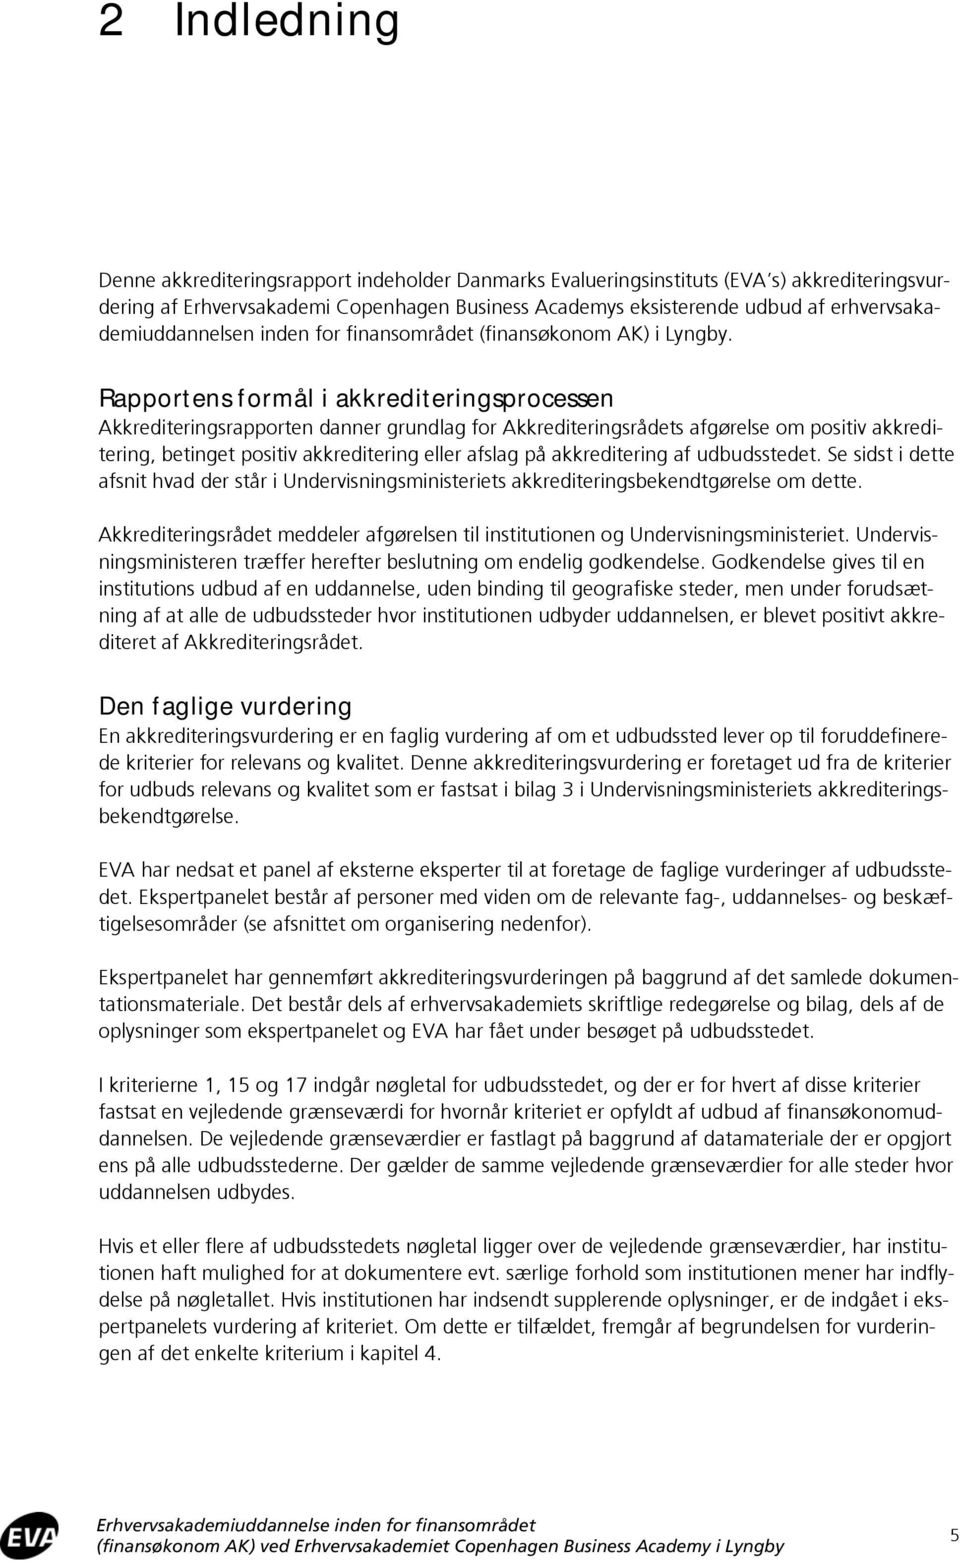 Erhvervsakademiuddannelse inden for finansområdet (finansøkonom AK) ved  Erhvervsakademiet Copenhagen Business Academy i Lyngby - PDF Free Download